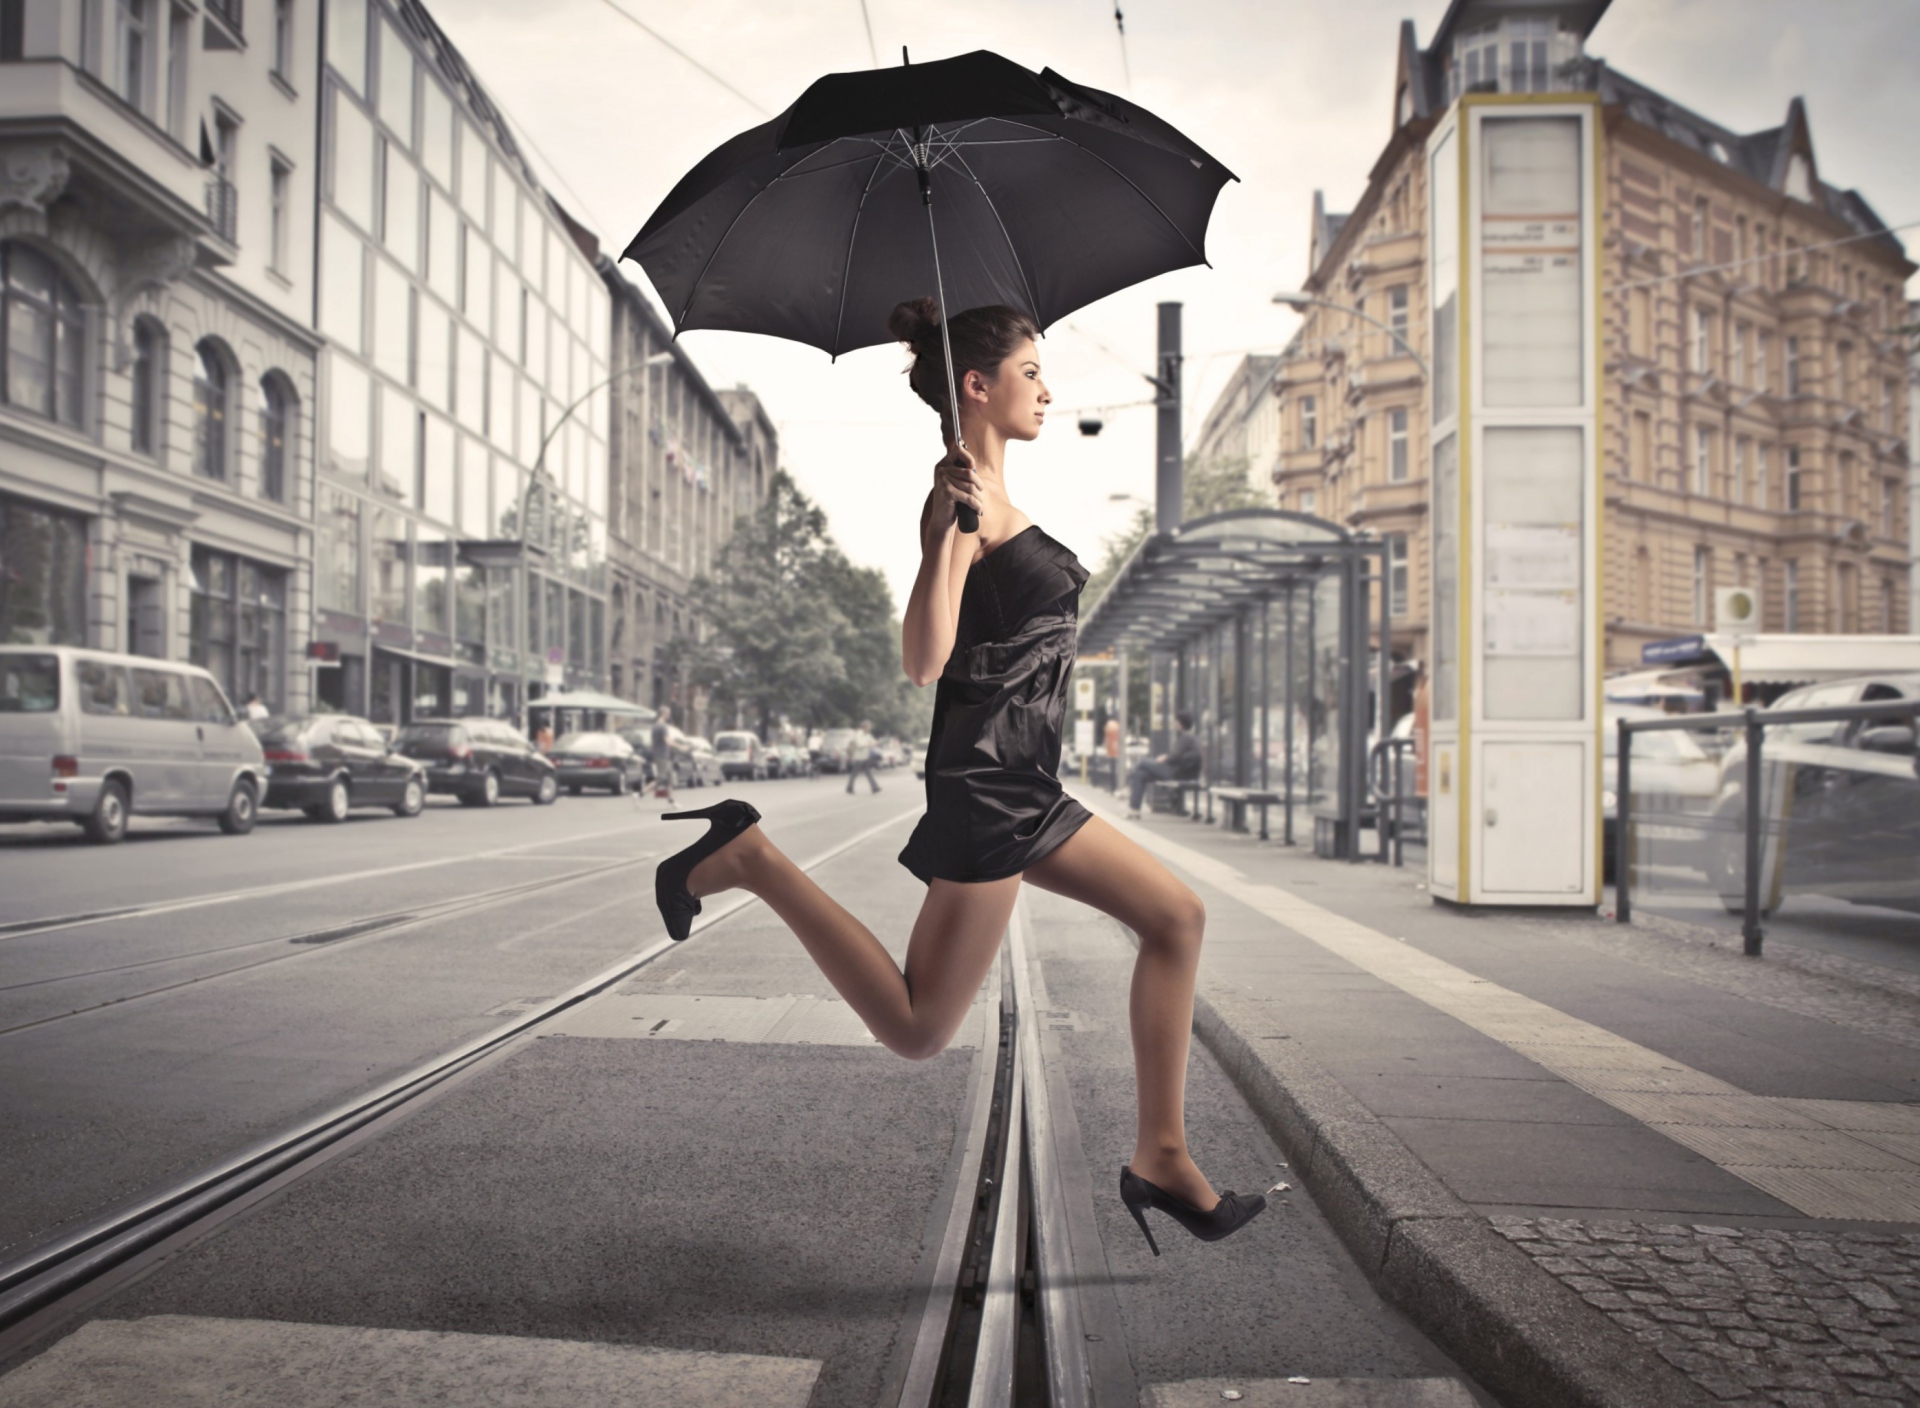 Обои City Girl With Black Umbrella 1920x1408